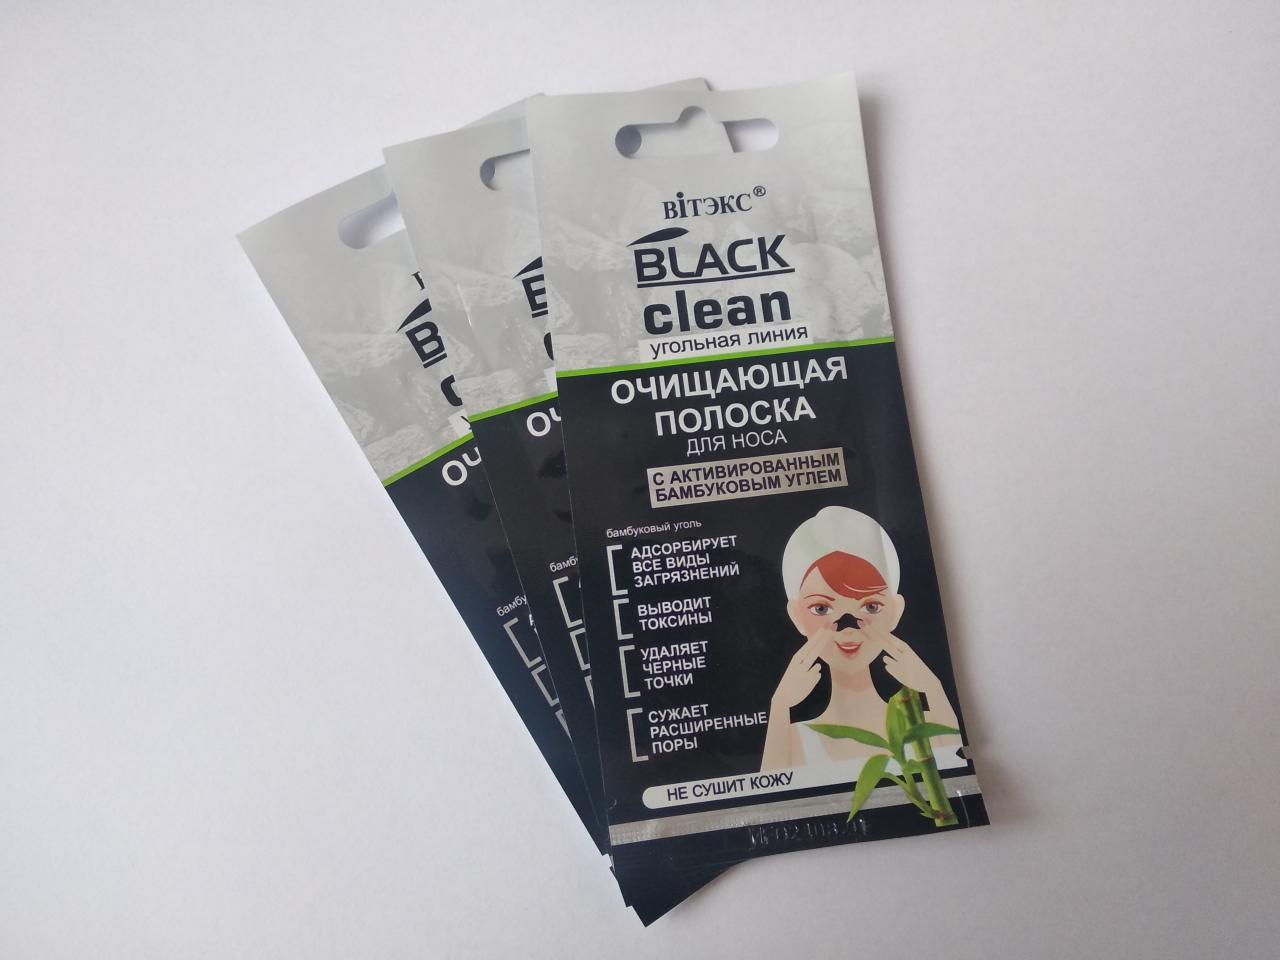 Отзыв на товар: Полоска для носа глубоко очищающая с активированным бамбуковым углем Black Clean. Белита - Витэкс.